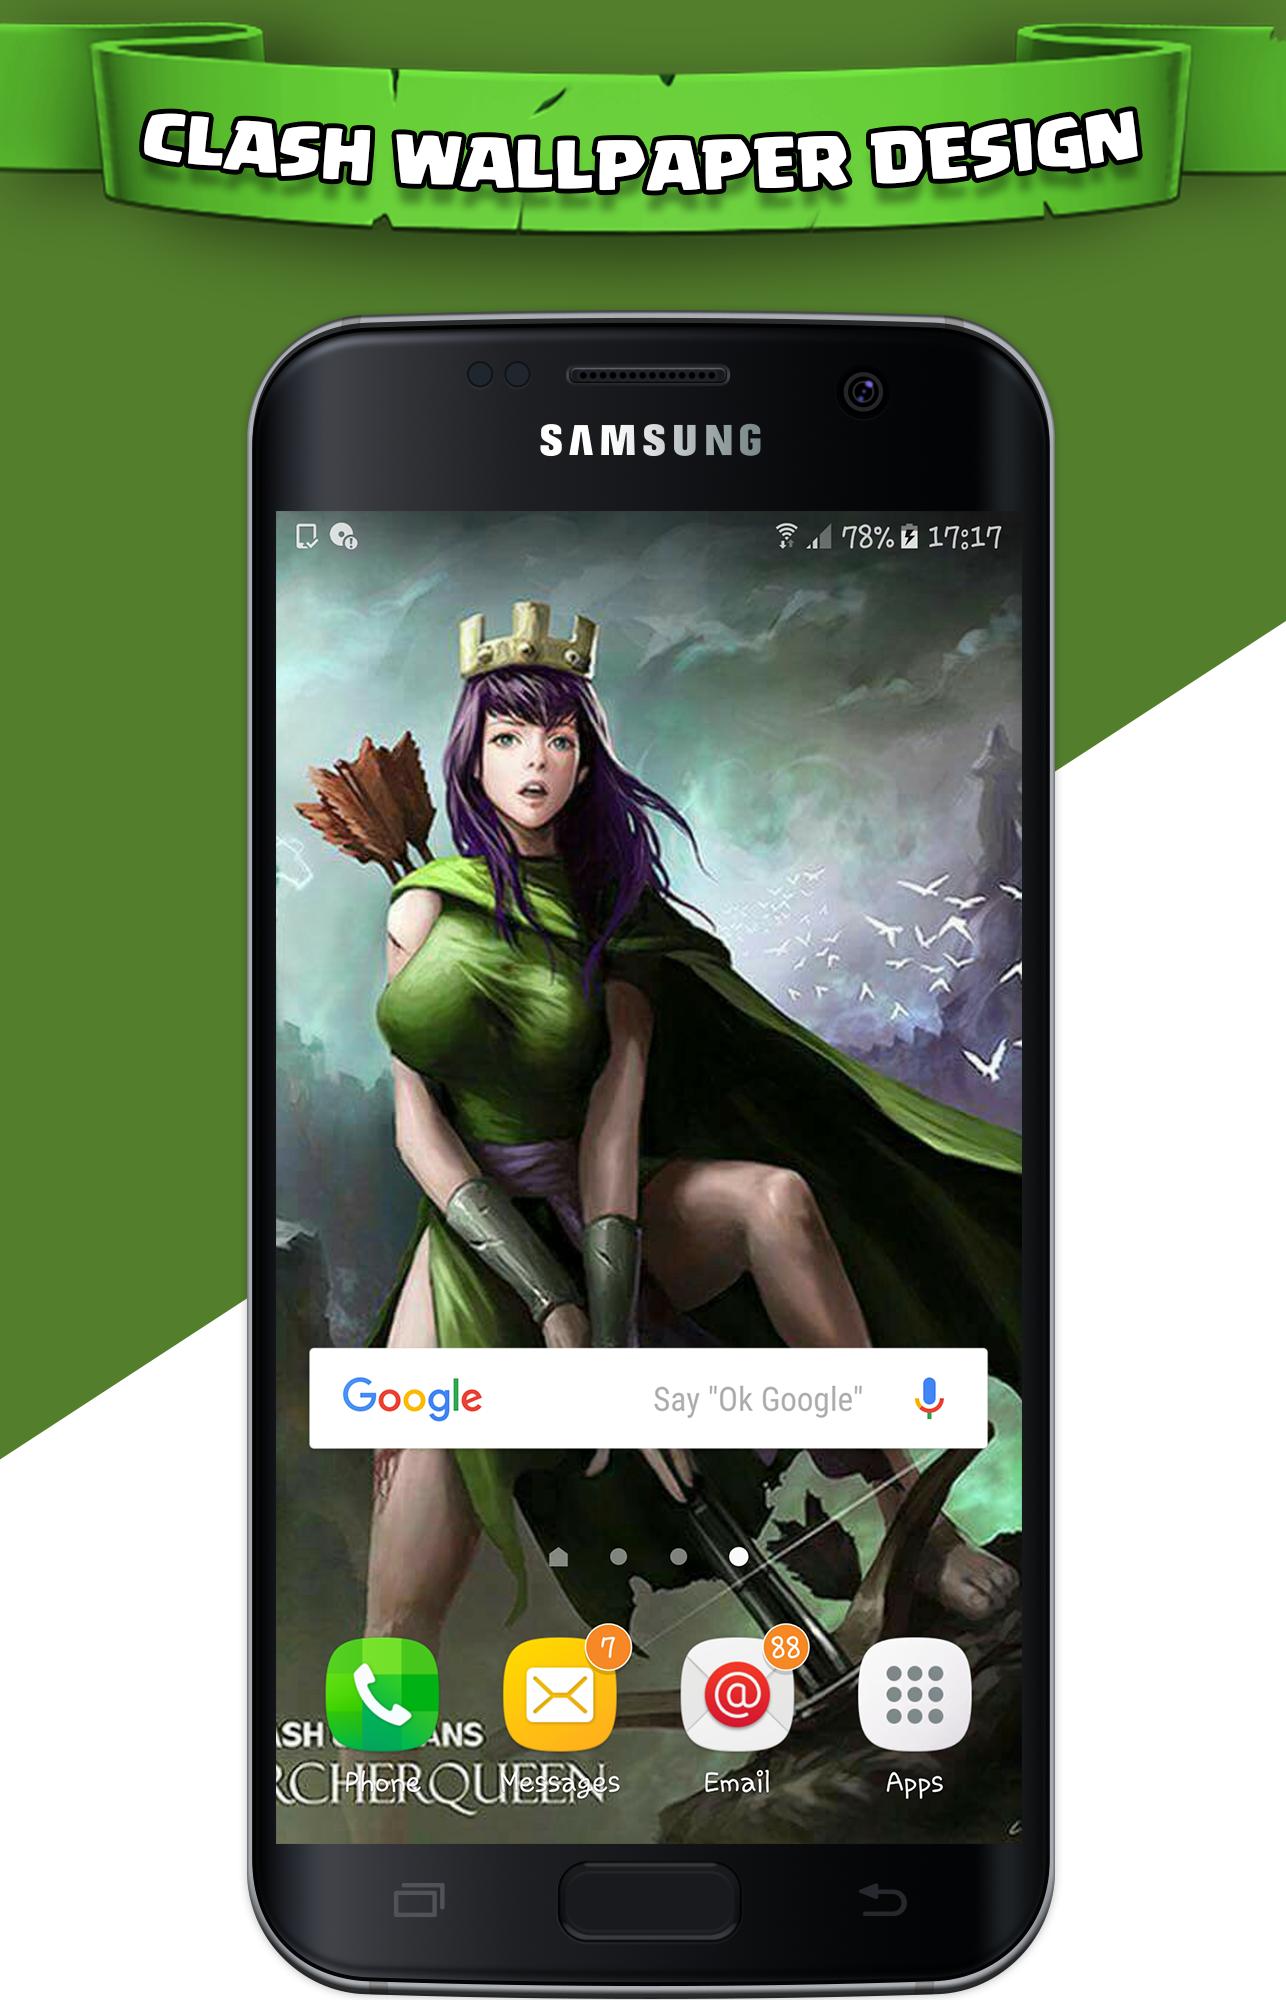 Wallpapers Clash HD APK pour Android Télécharger